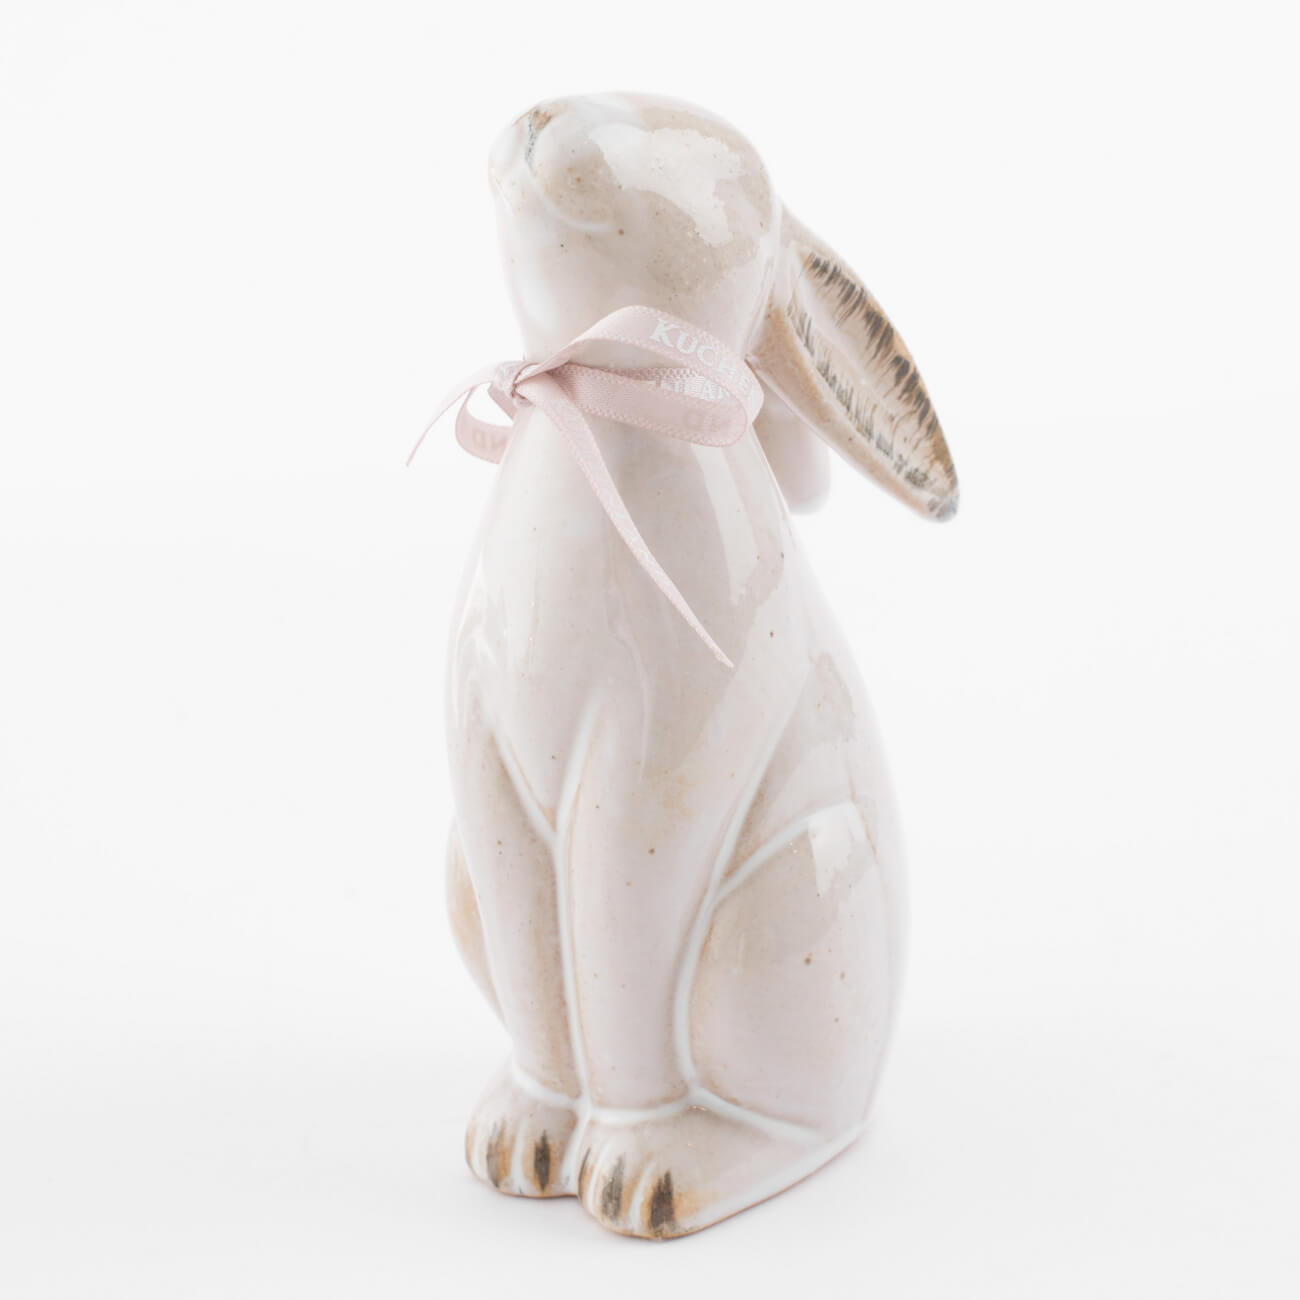 Статуэтка, 14 см, фарфор P, бежевая, Кролик сидит, Natural Easter статуэтка 14 см фарфор p бежевая кролик сидит natural easter